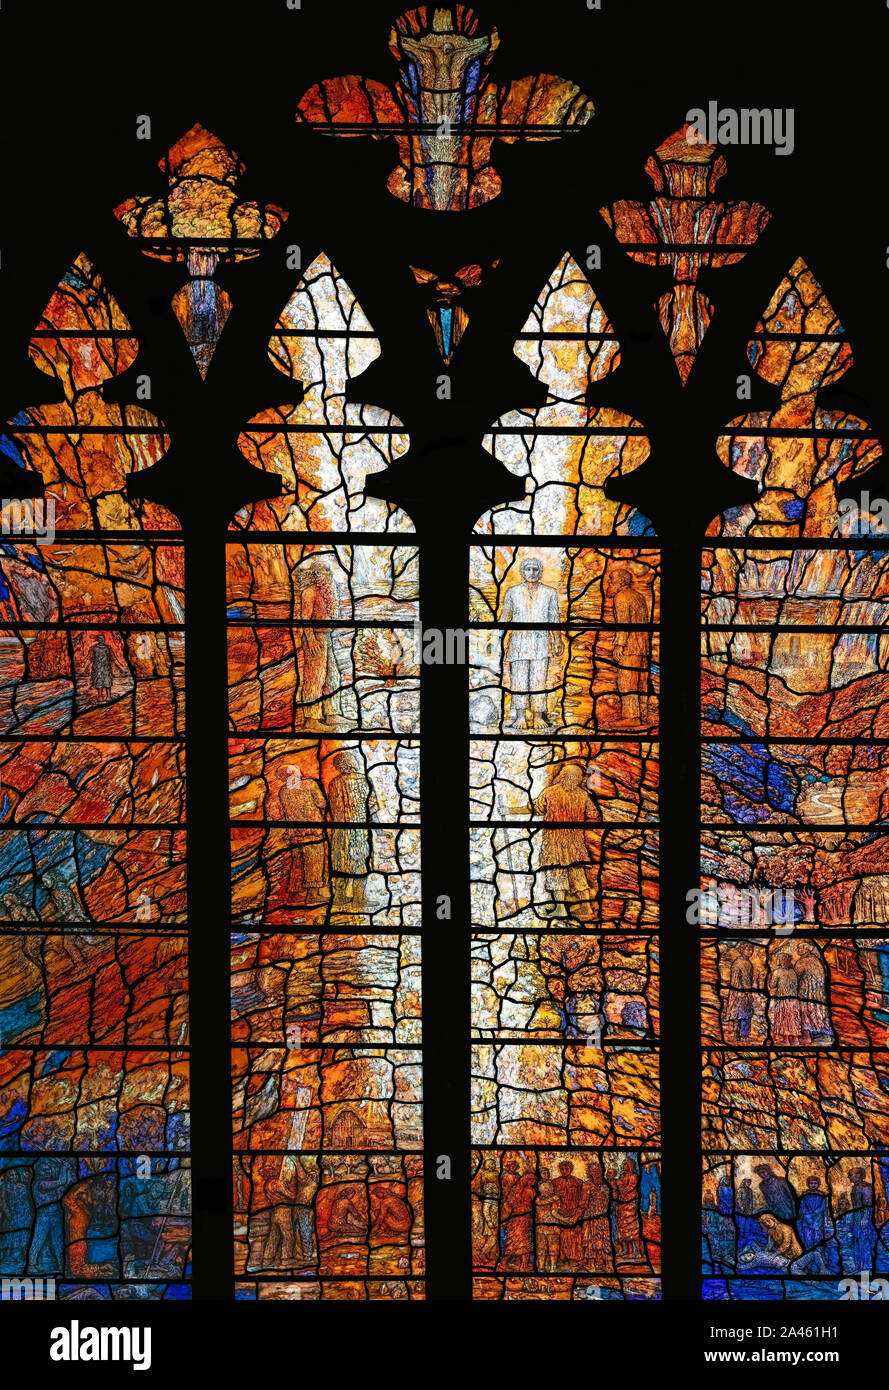 Die verklärung Fenster, von Thomas Denny (2010), in Erinnerung an Erzbischof Michael Ramsay, Durham Cathedral, Großbritannien Stockfoto